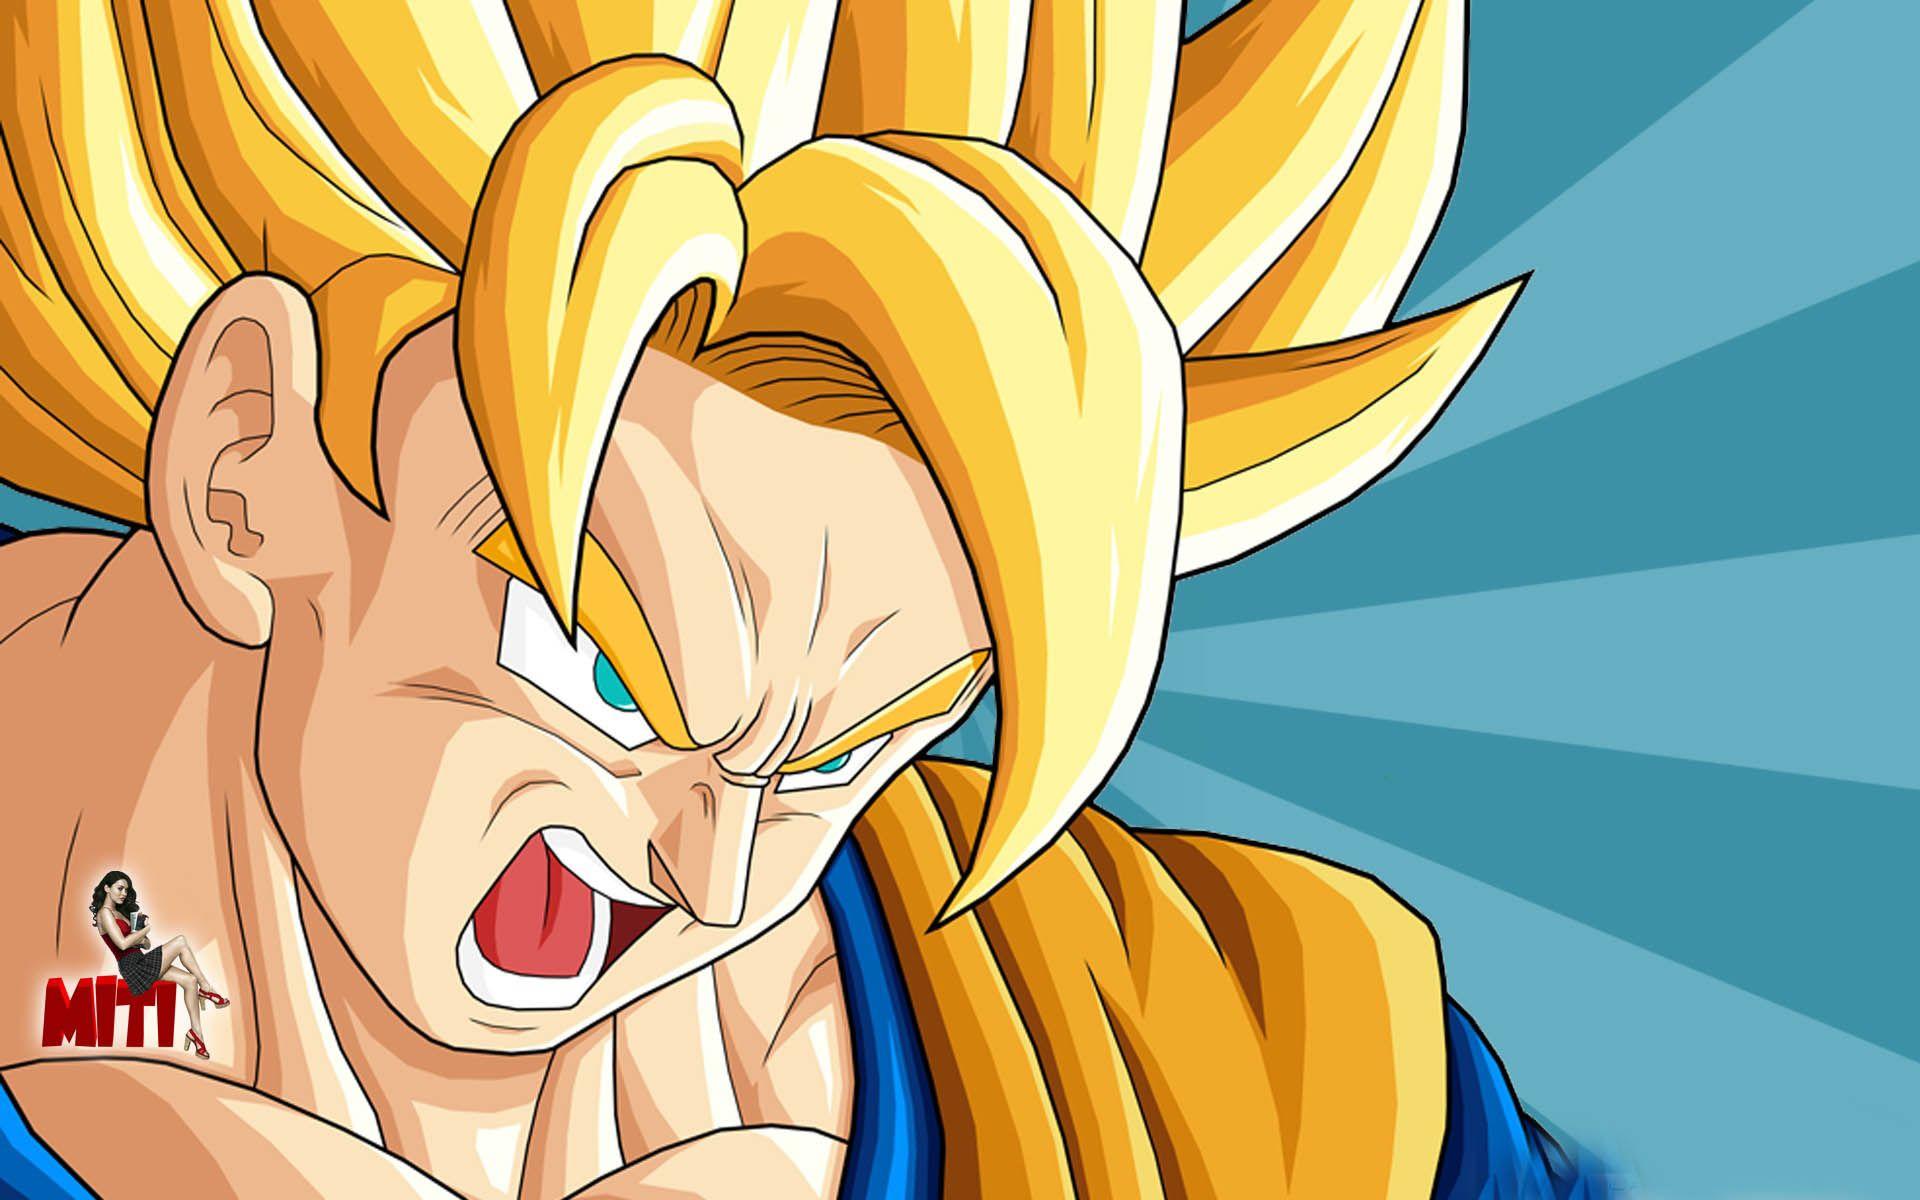 The Image Of Goku Dragon Ball Z Fresh HD Wallpaper X Anime Image